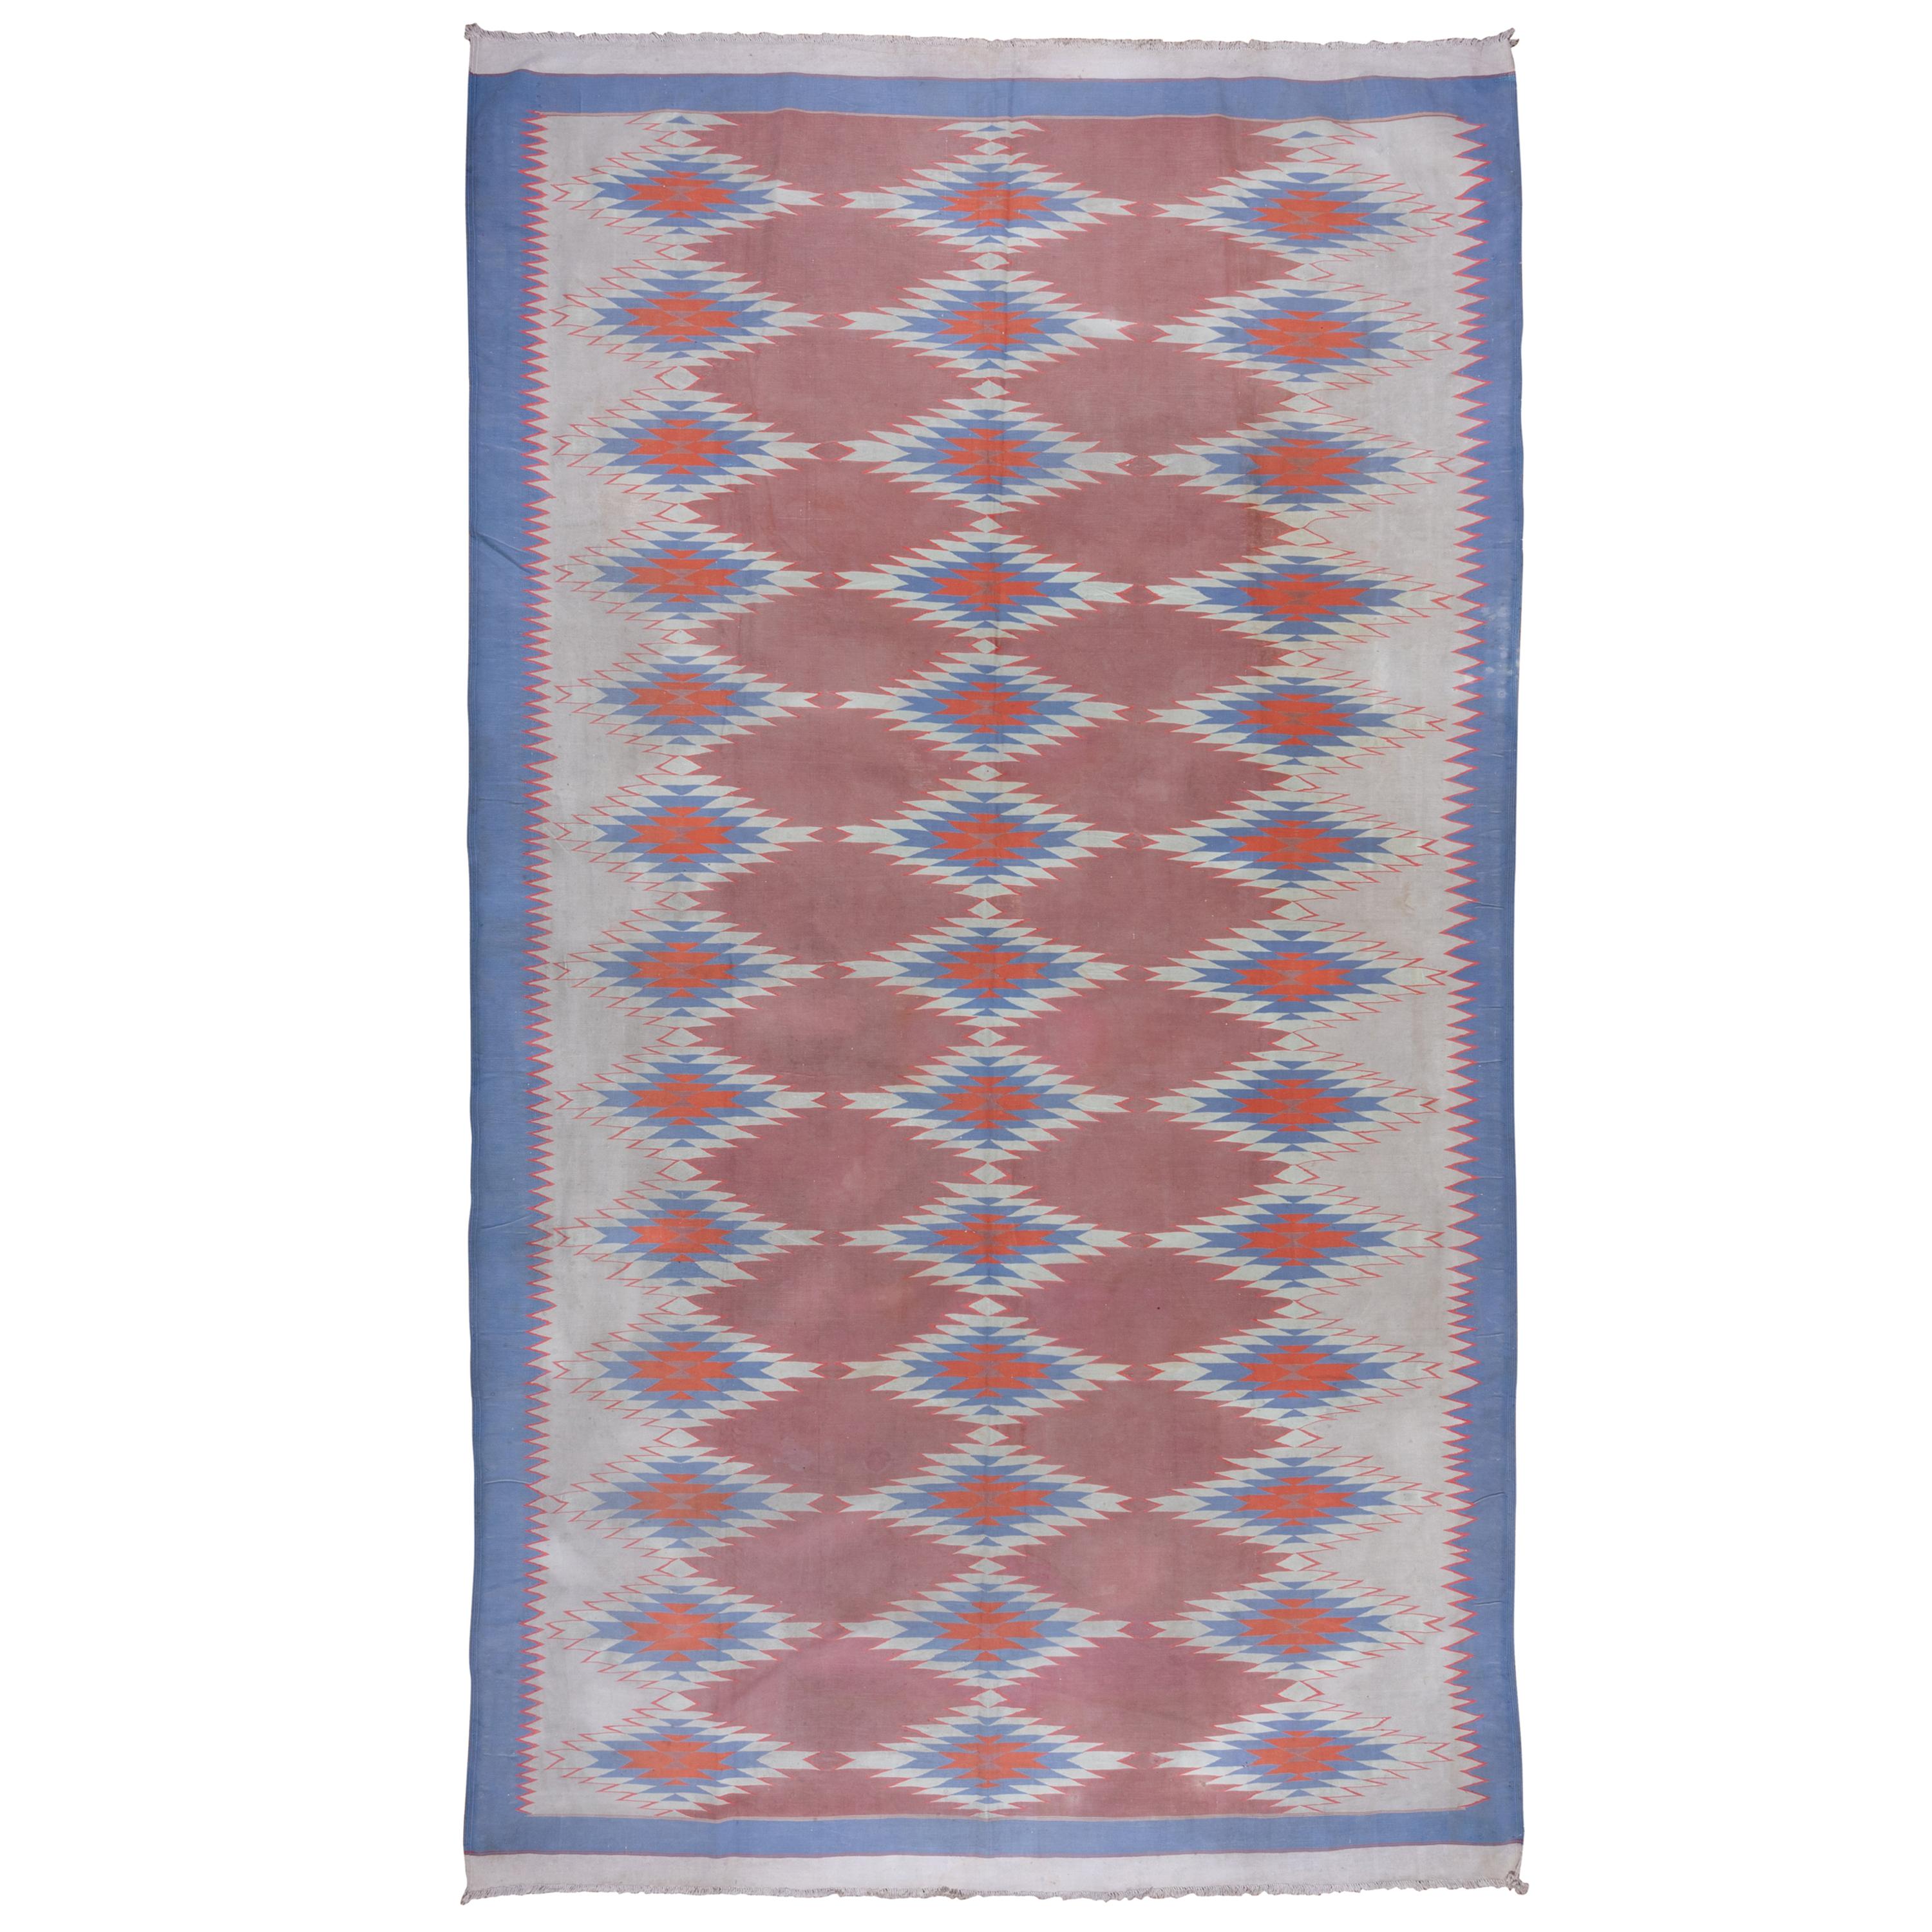 1940er Jahre Art déco Shurrie-Teppich aus Baumwolle, grau, Koralle und orangefarben, blaue Bordüren